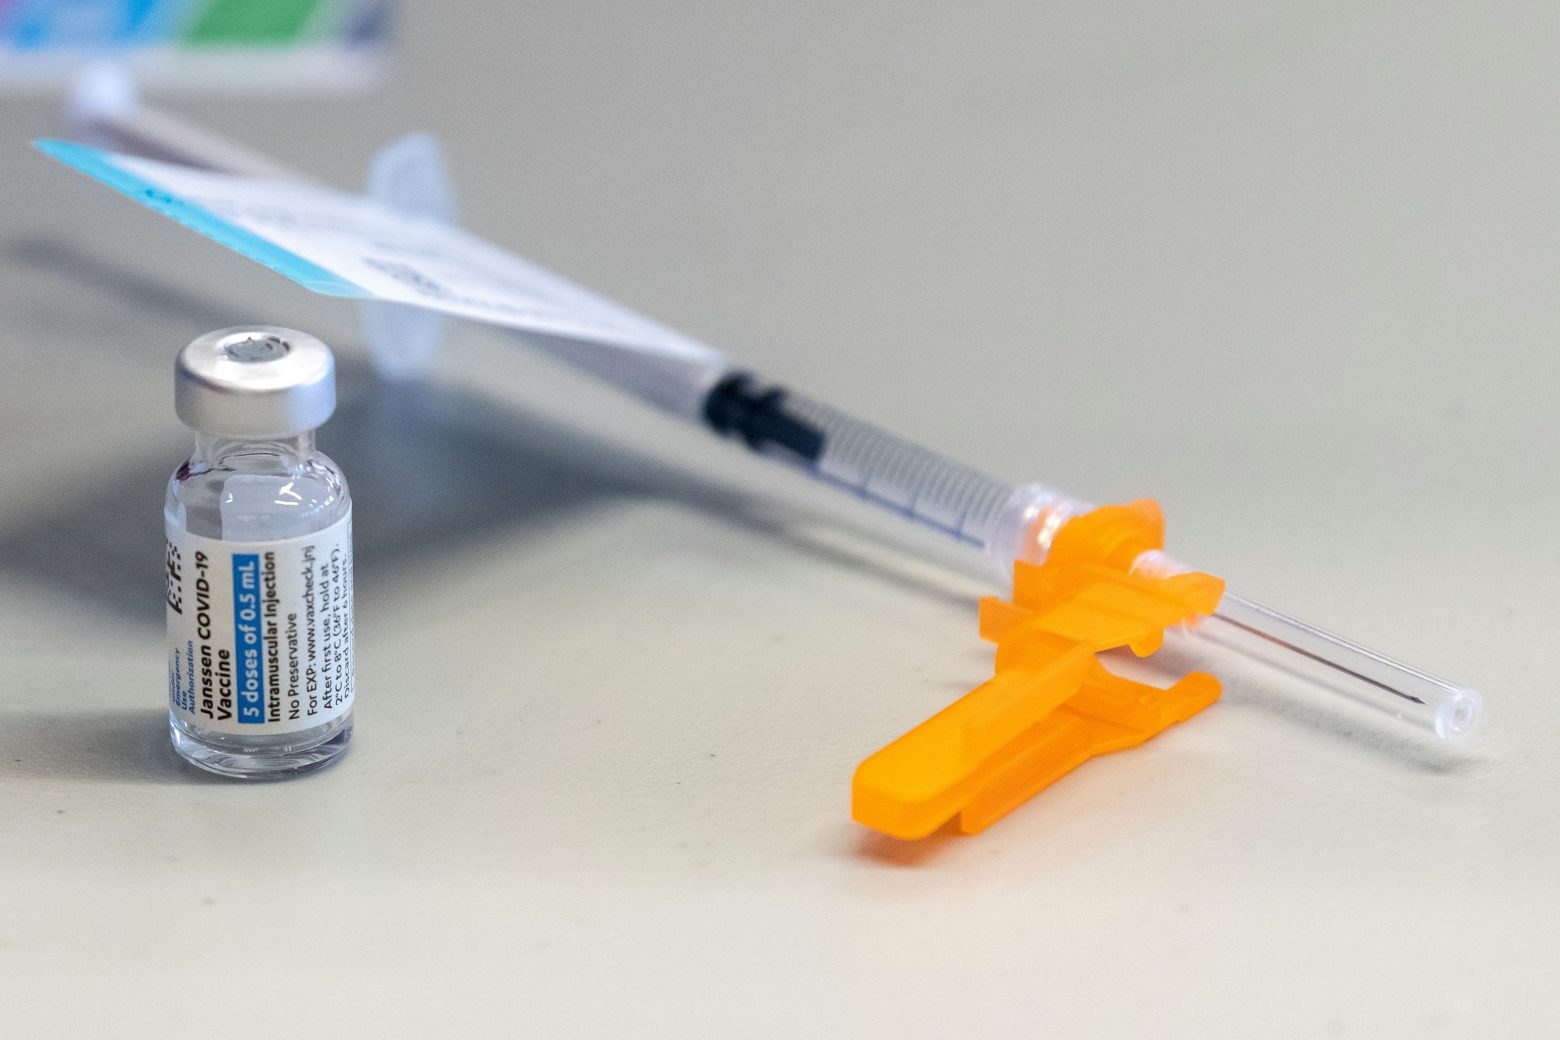 Εμβόλιο - Εννέα ευρωπαϊκές χώρες συνιστούν τρίτη δόση χωρίς να περιμένουν έγκριση του ΕΜΑ